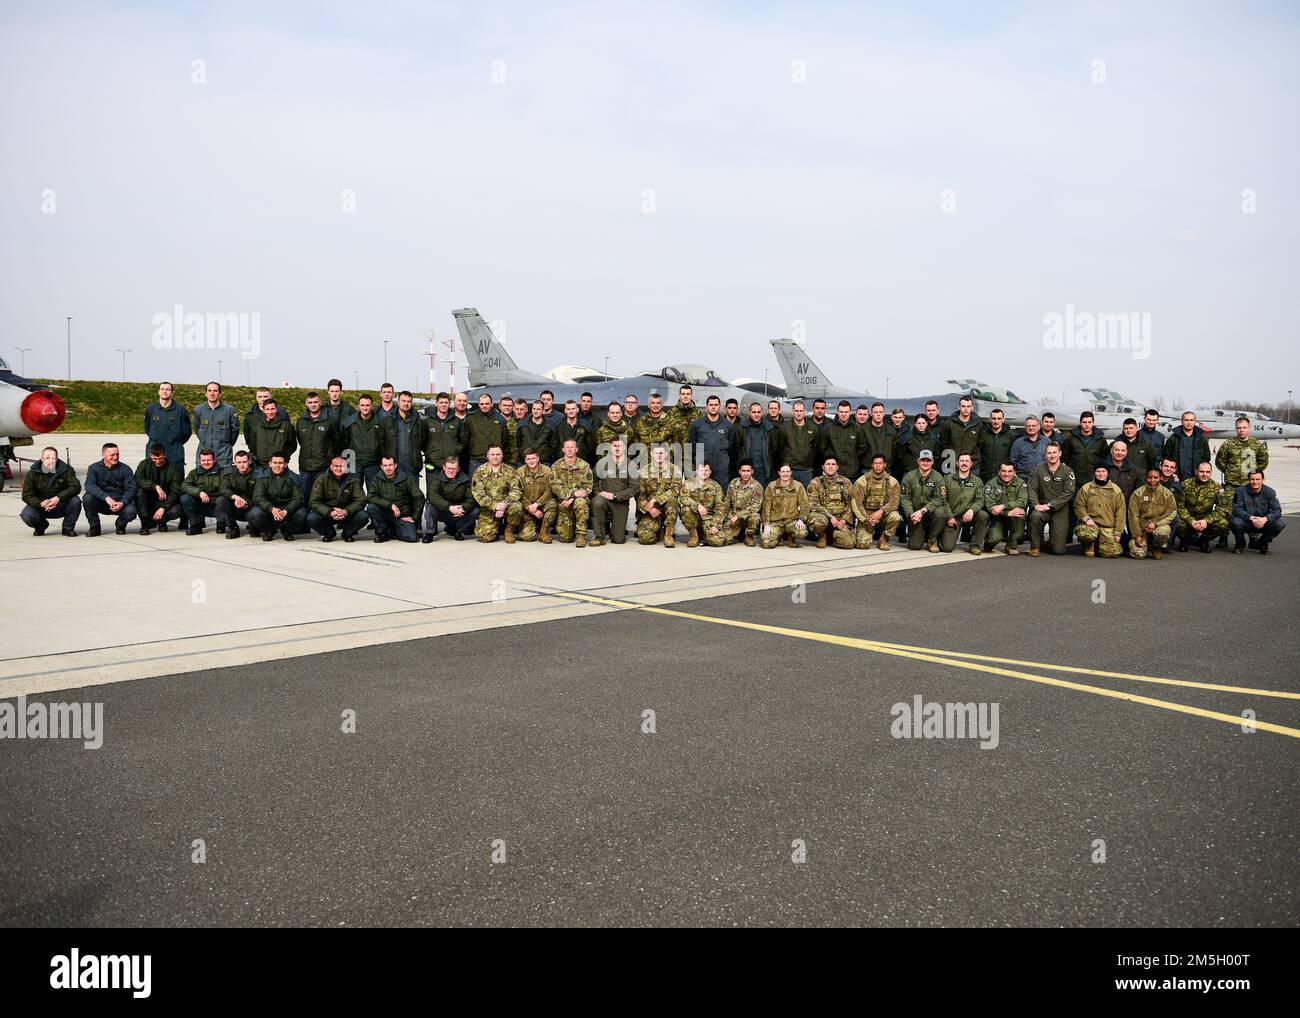 Des membres de l'aile de chasseurs 31st, base aérienne d'Aviano (Italie), posent pour une photo avec des membres de l'escadron de chasseurs 191st de l'Armée de l'air croate devant deux États-Unis La Force aérienne F-16C lutte contre les faucons et la MIG-21s croate lors de la conclusion des opérations d’emploi au combat Agile à la base aérienne croate de 91st à Pleso (17 mars 2022). Le 31st FW a exécuté des opérations ACE de routine avec des alliés croates dans une mission visant à améliorer la préparation nécessaire pour répondre à tout défi potentiel en Europe du Sud-est. Banque D'Images